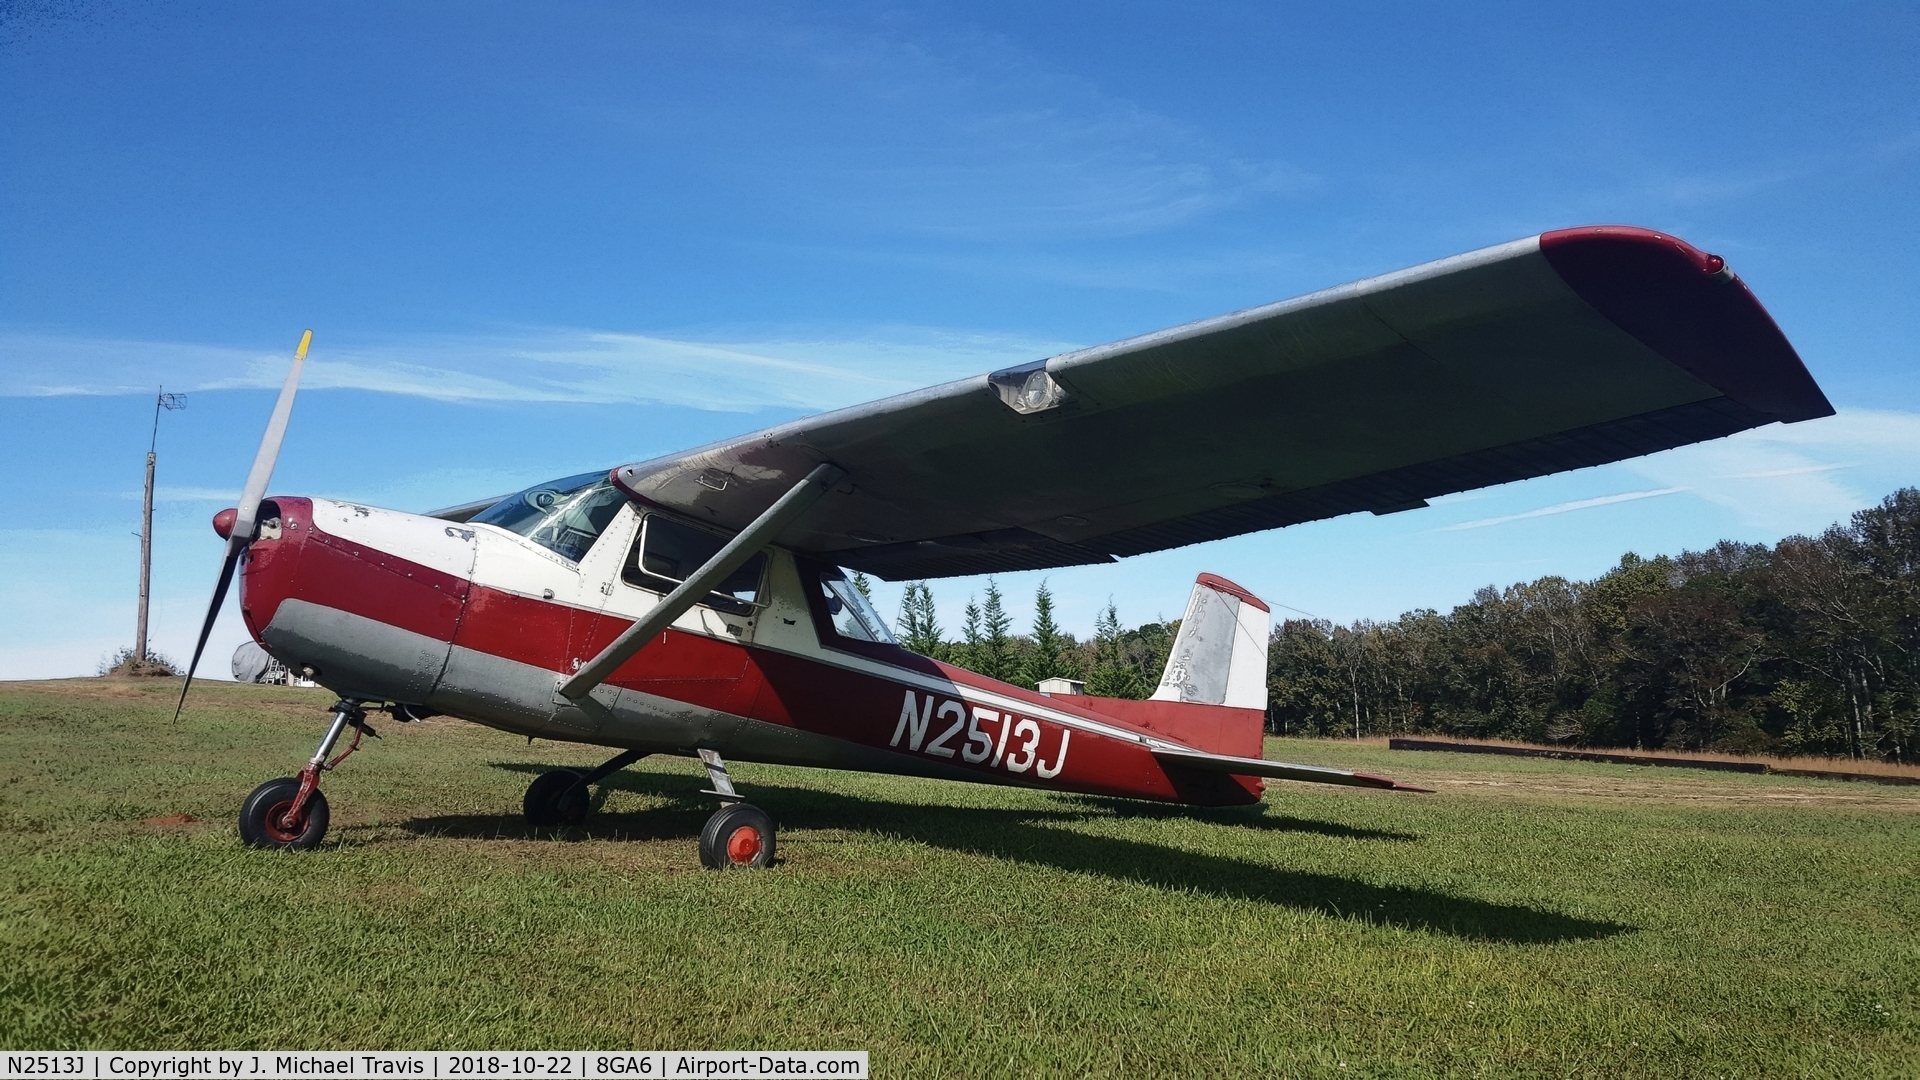 N2513J, 1964 Cessna 150E C/N 15061013, N2513J making a visit to 8GA6.